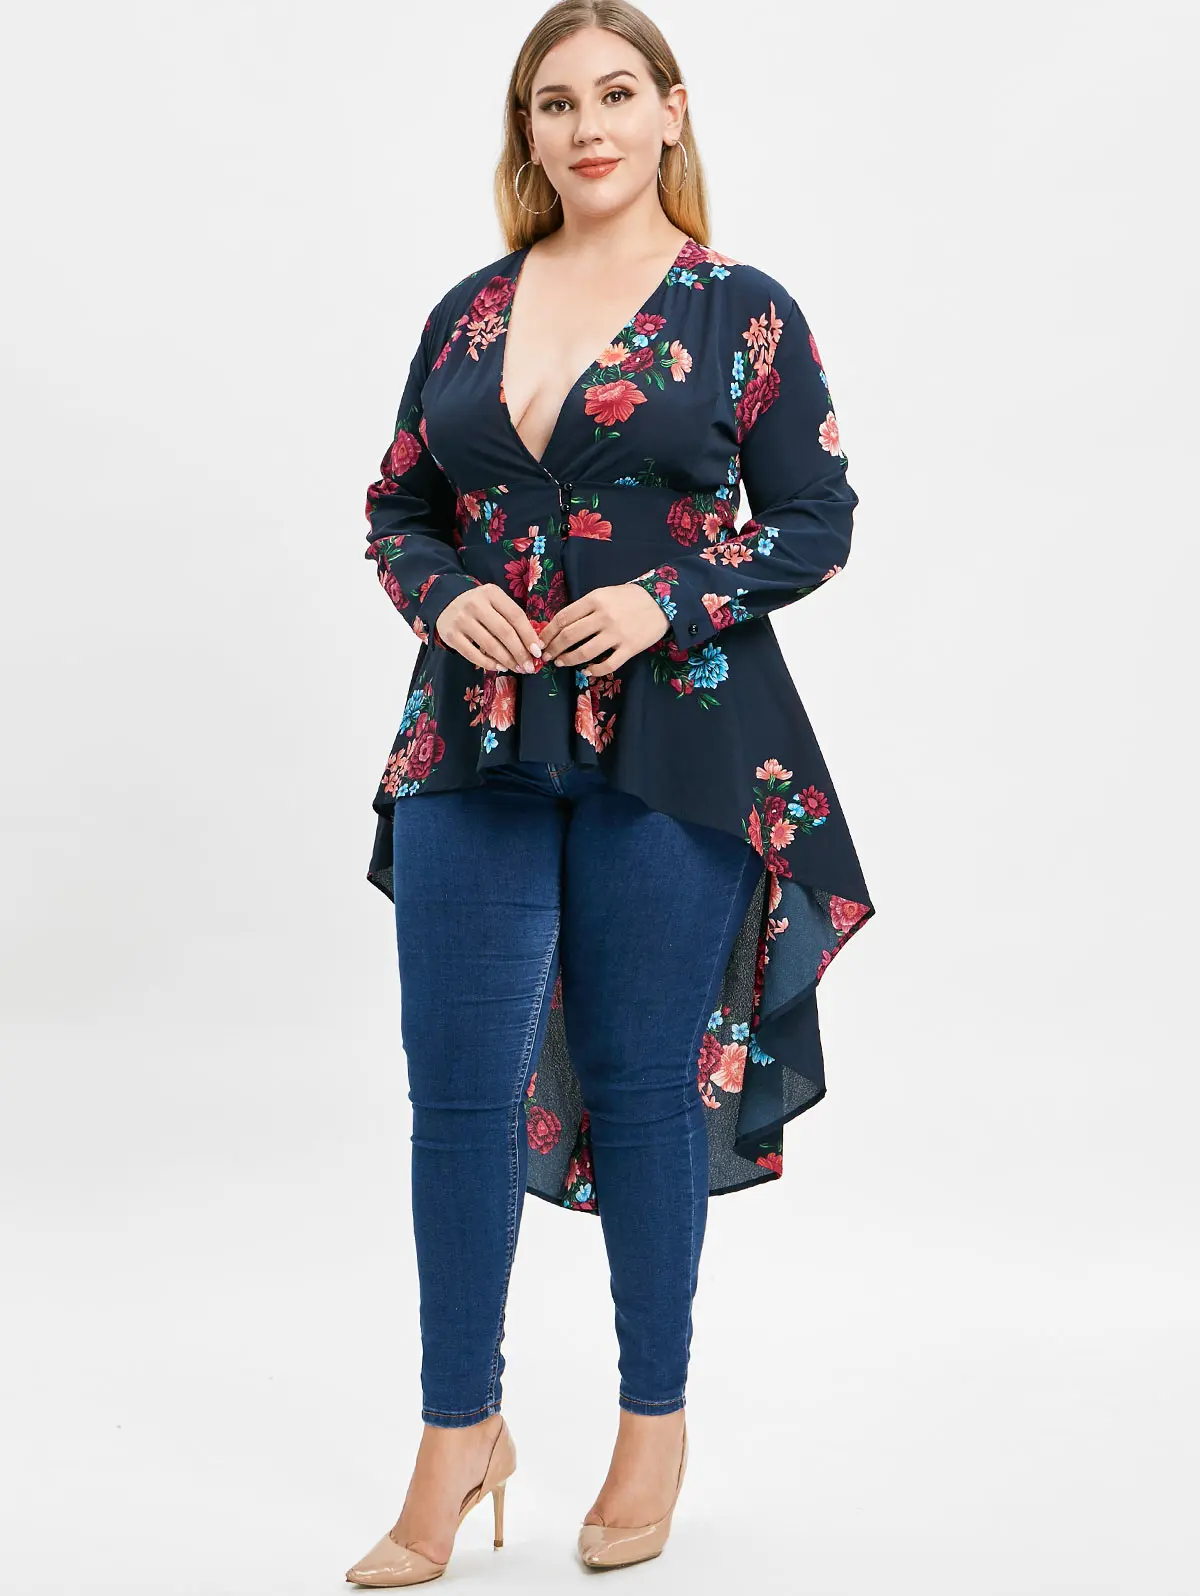 Wipalo плюс Размеры глубоким вырезом Высокий Низкий Цветочные Макси-блузка Осень с длинным рукавом Асимметричная блуза рубашка Для женщин Blusas 5XL Топы